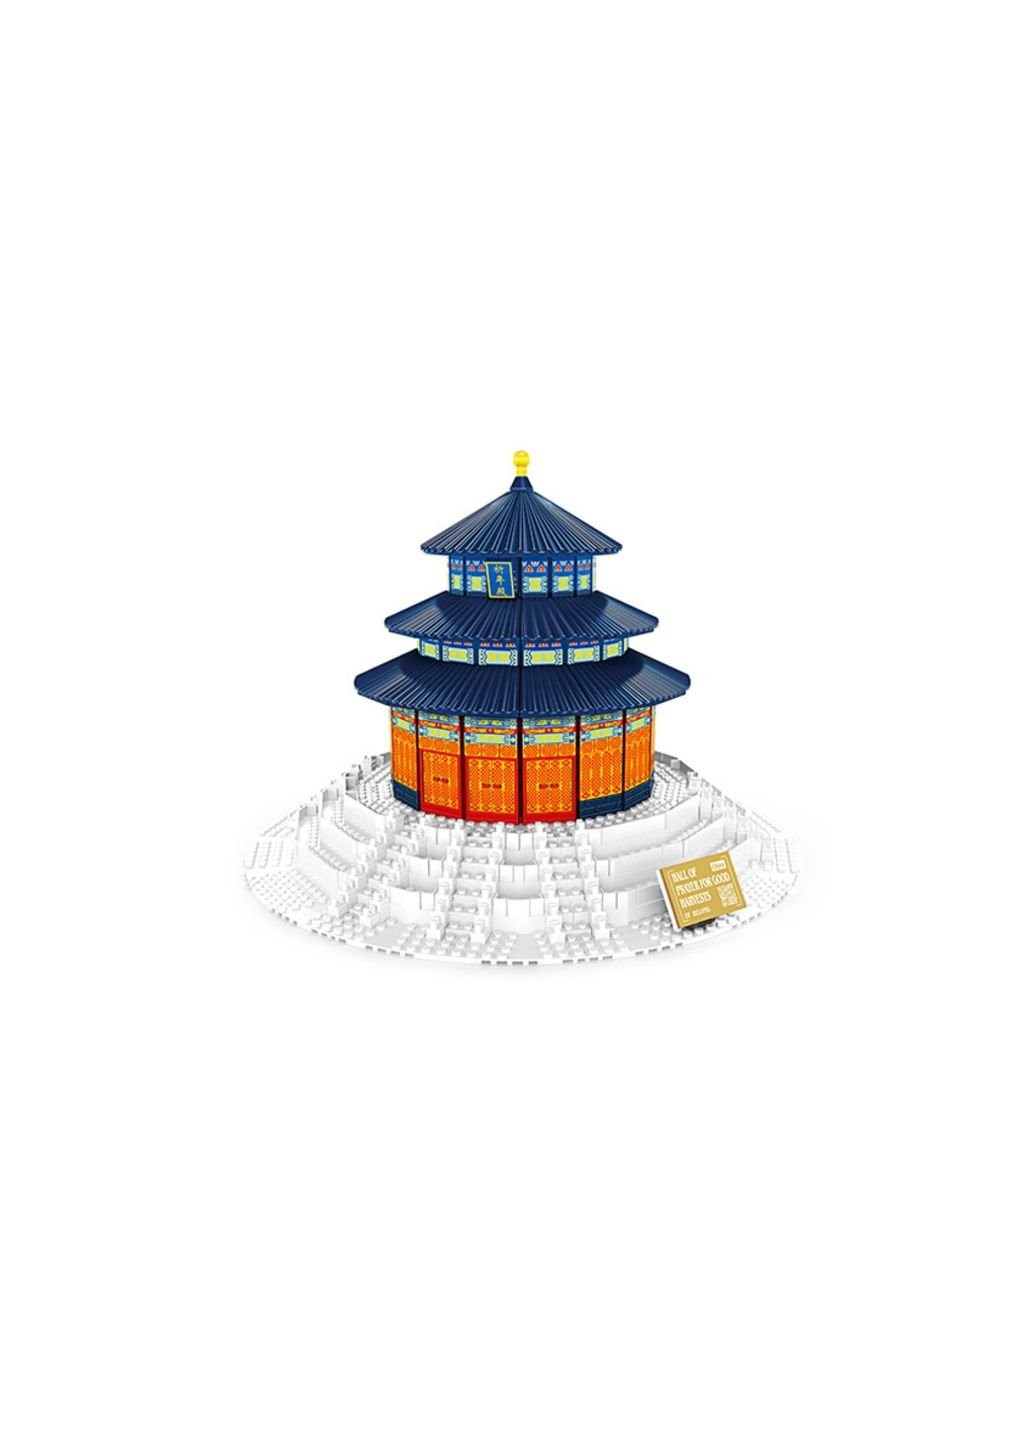 Конструктор Храм неба, Китай (WNG-Temple- Heaven) Wange (254053093)